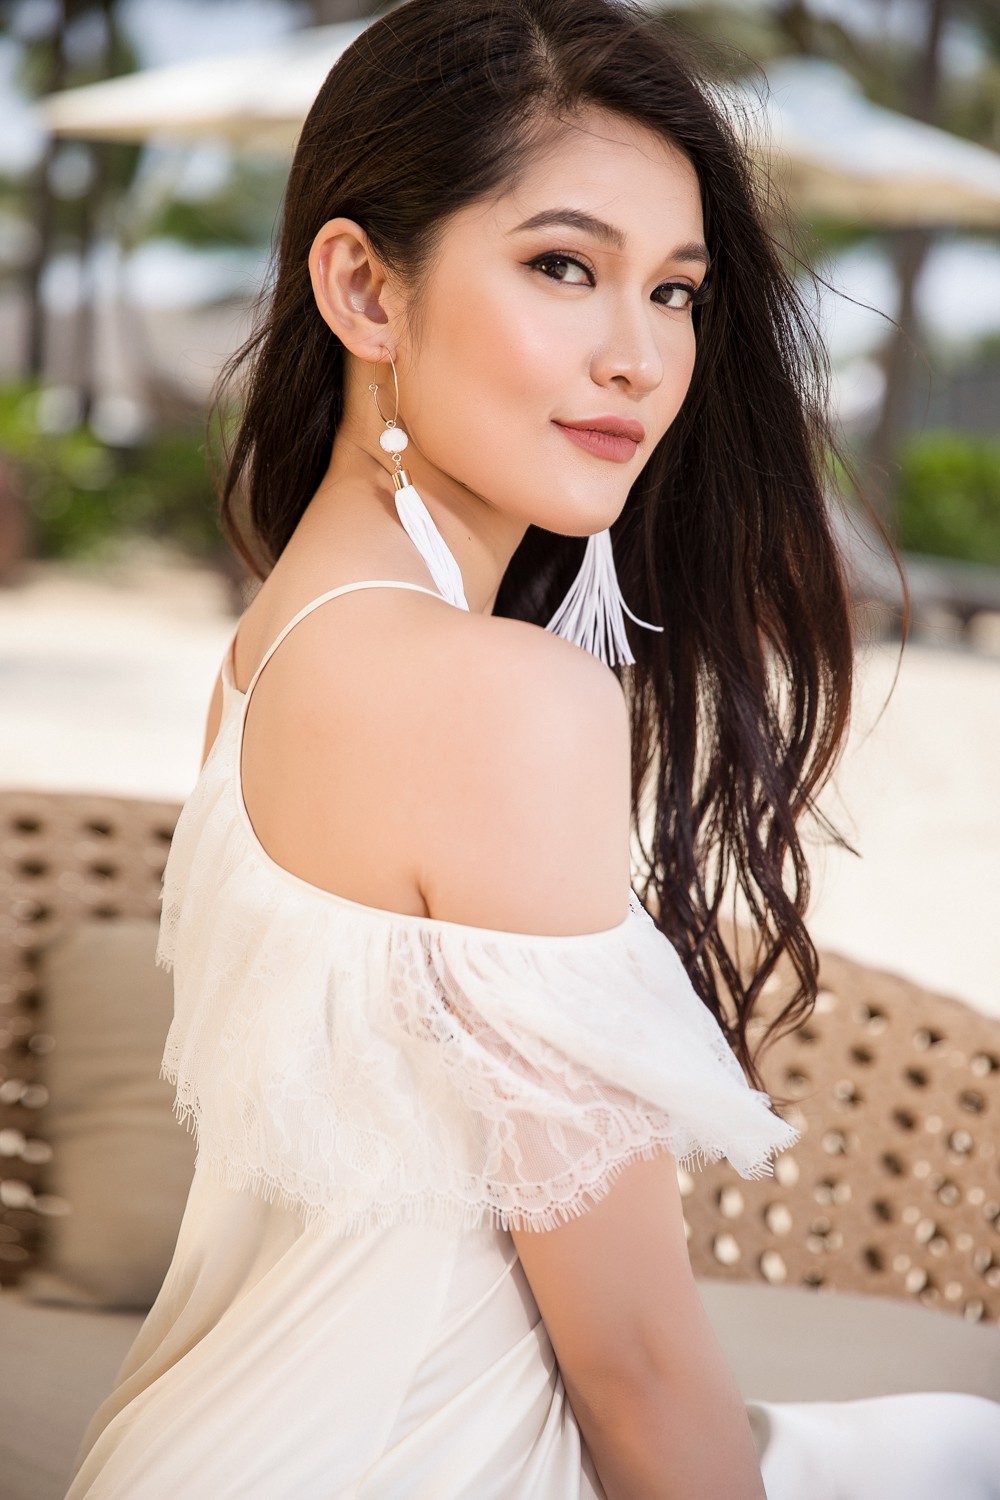 Ghen tỵ với bộ ảnh đẹp lung linh của Hội bạn thân Hoa hậu Mỹ Linh - Thùy Dung - Thanh Tú - Ảnh 10.